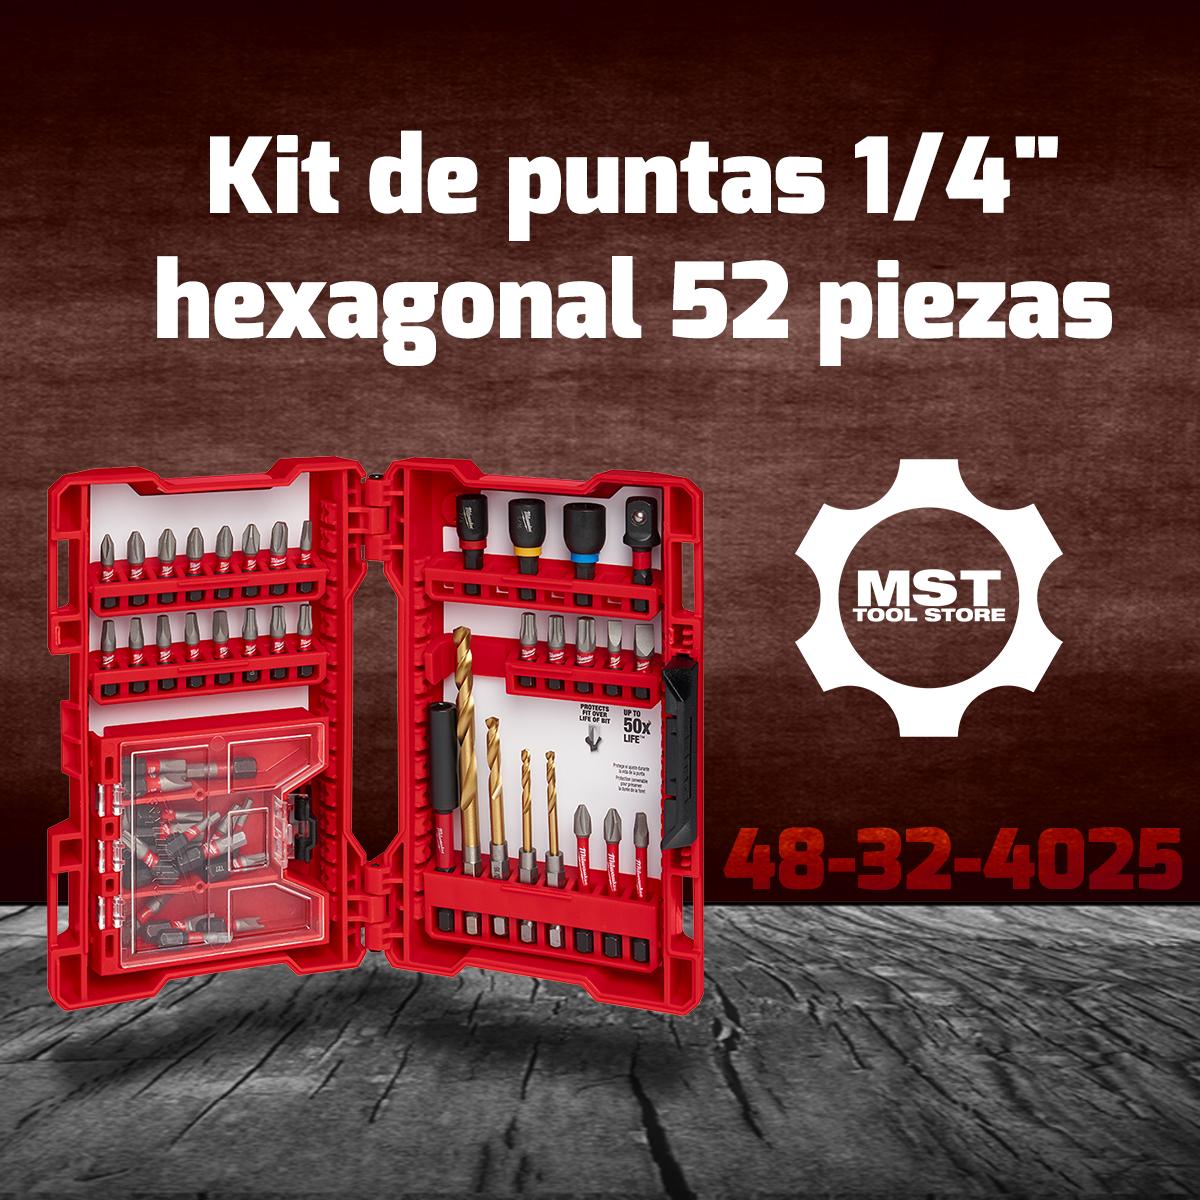 MILWAUKEE 48-32-4025 Kit de puntas 1/4" hexagonal 52 piezas